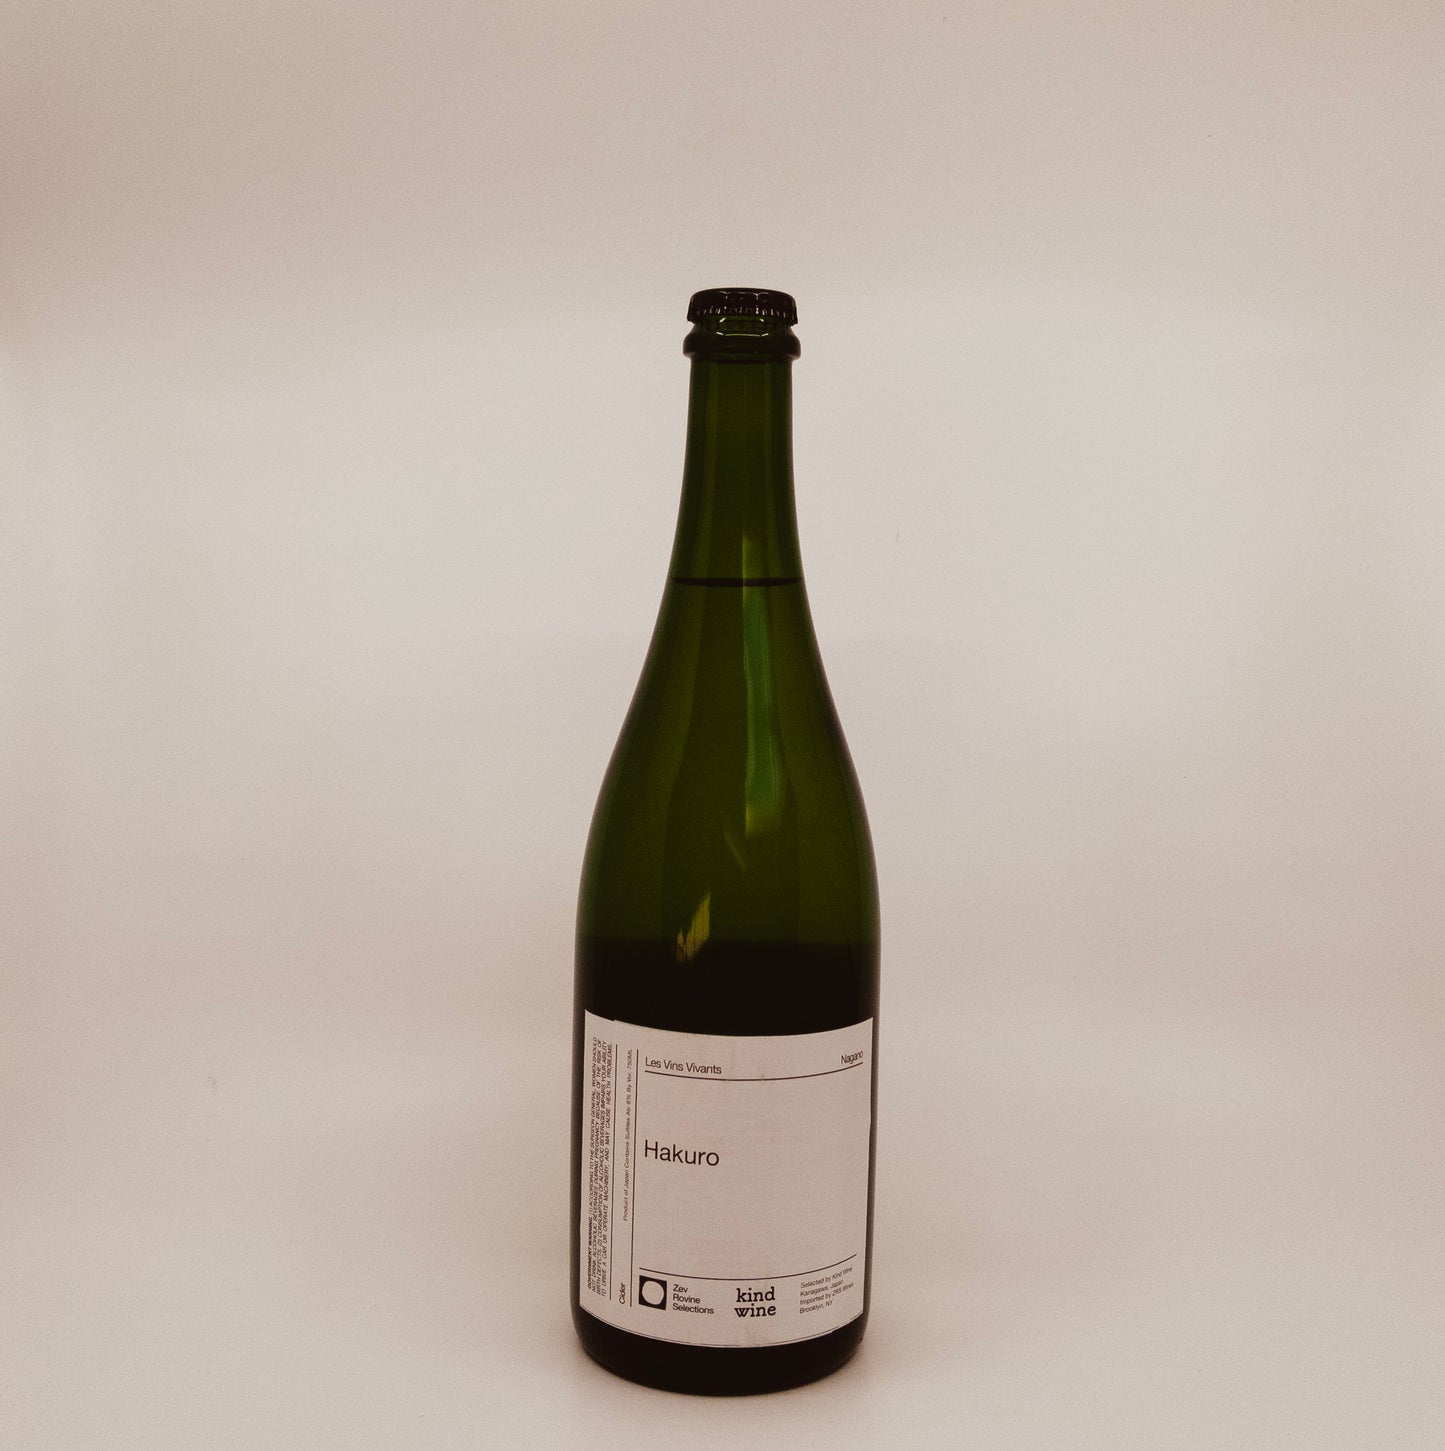 Les Vins Vivants Hakuro Nagano Cider (2020)